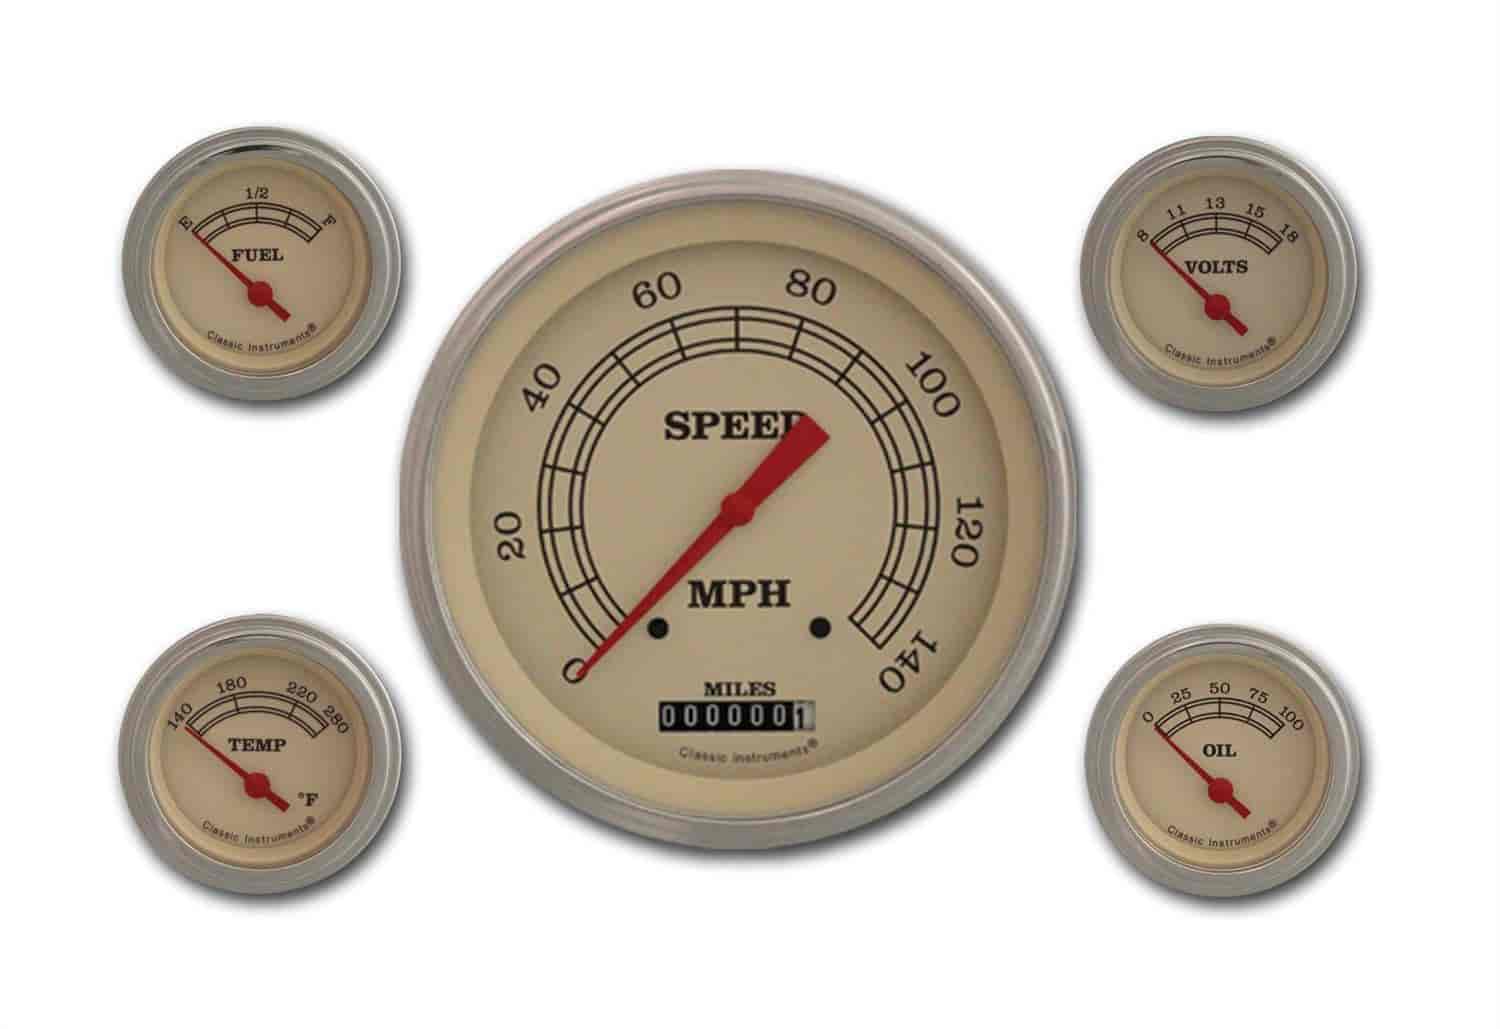 Vintage Series 5-Gauge Set 4-5/8" Electrical Speedometer (140 mph)